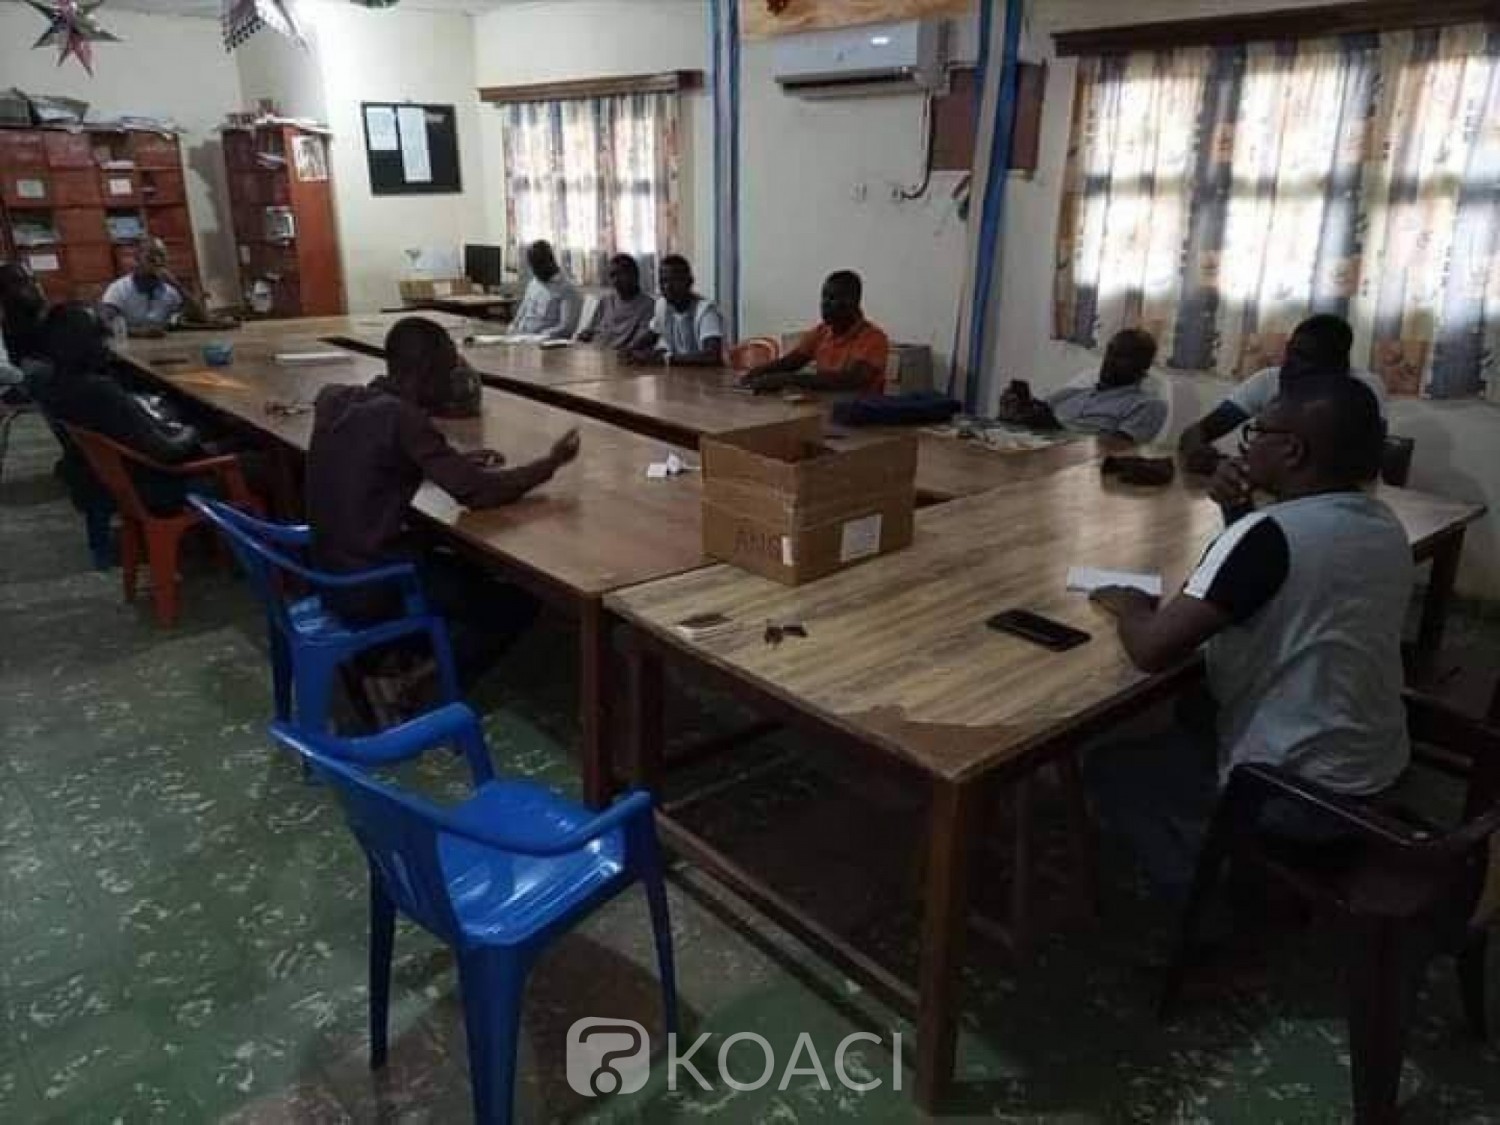 Côte d'Ivoire : Bouaké, leur collègue copieusement tabassé par des élèves, les enseignants arrêtent les cours